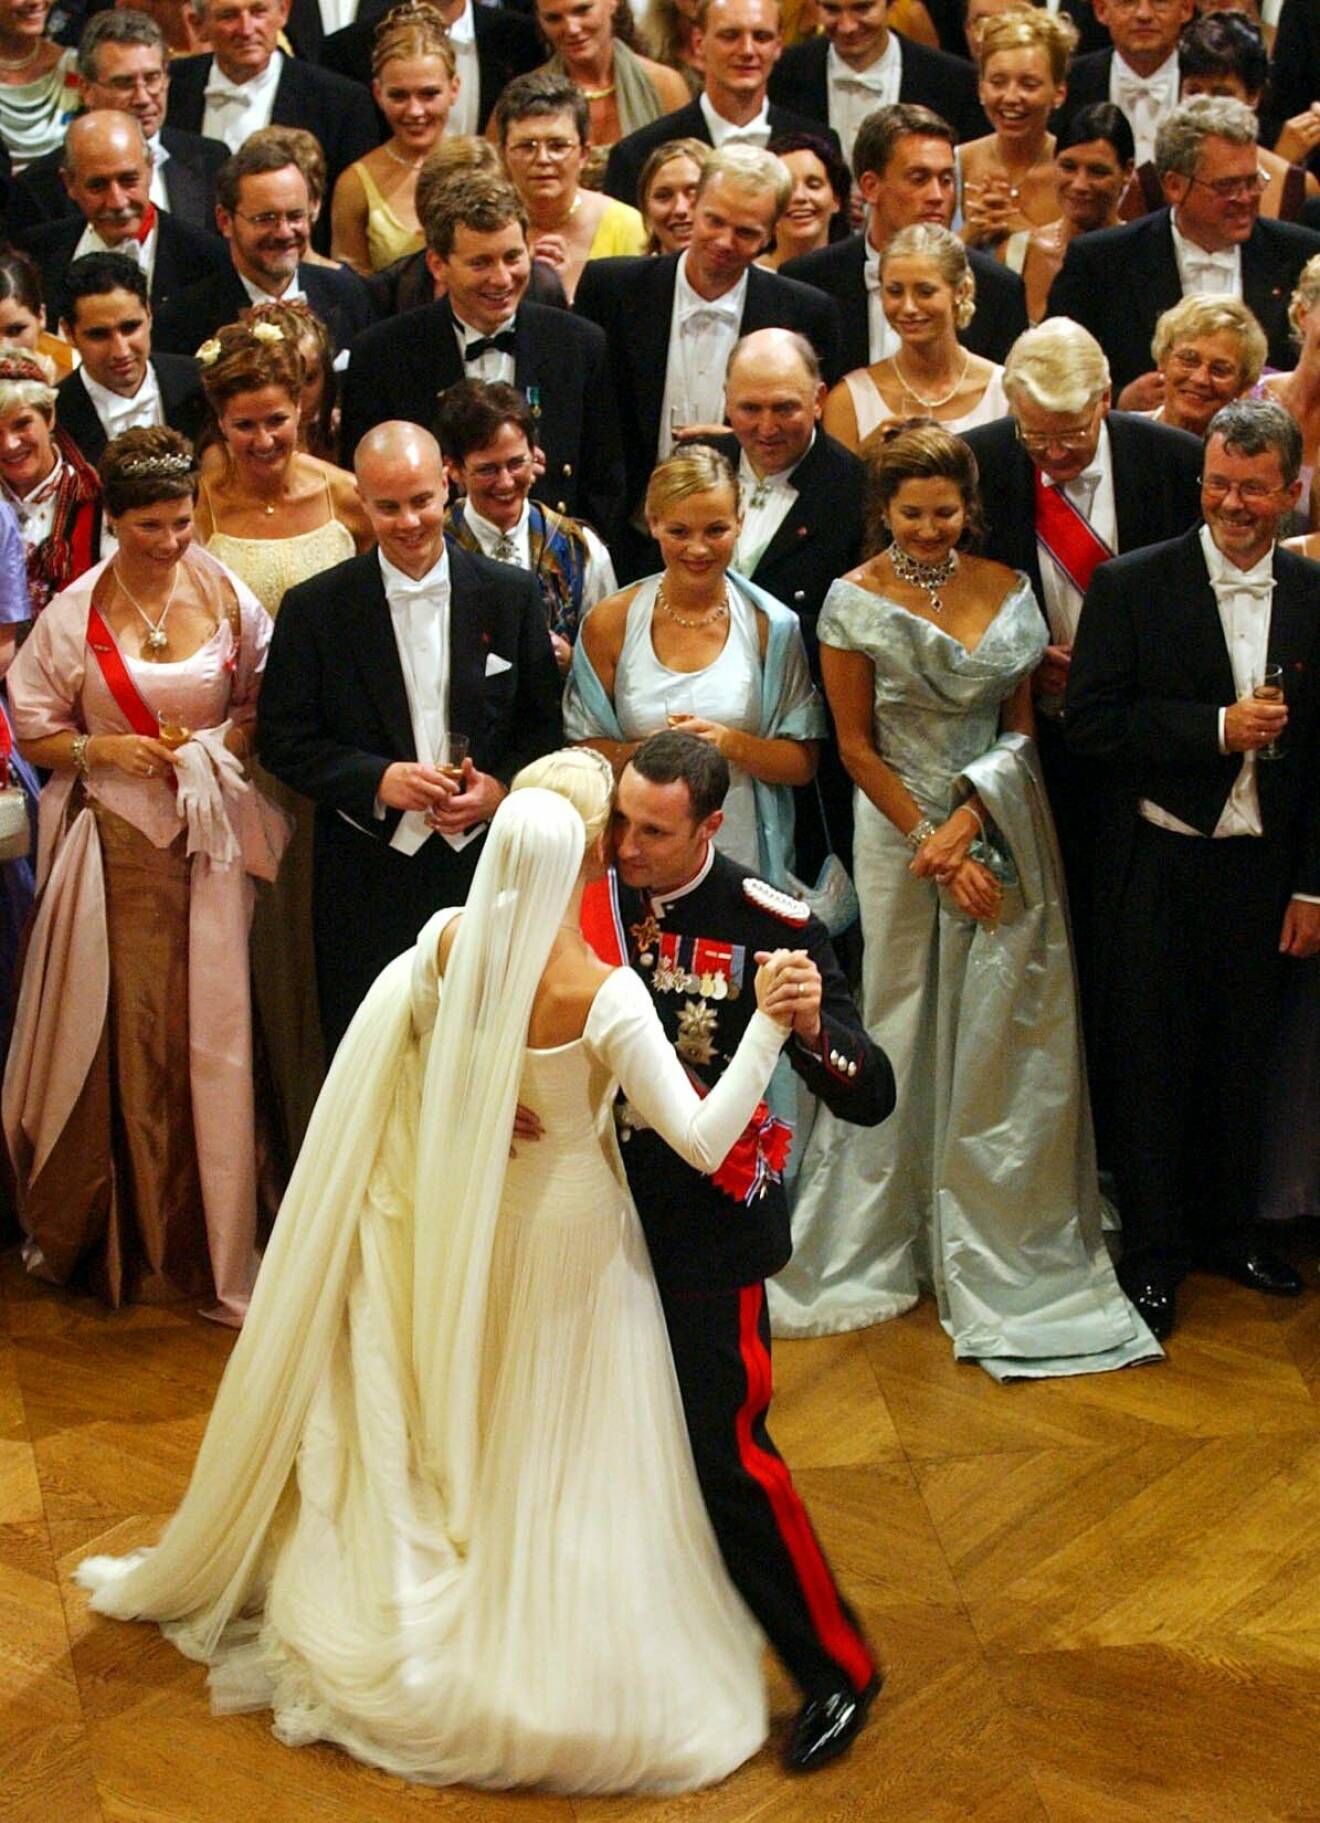 Kronprinsesssan Mette-Marit och kronprins Haakon när de dansade bröllopsvals 2001